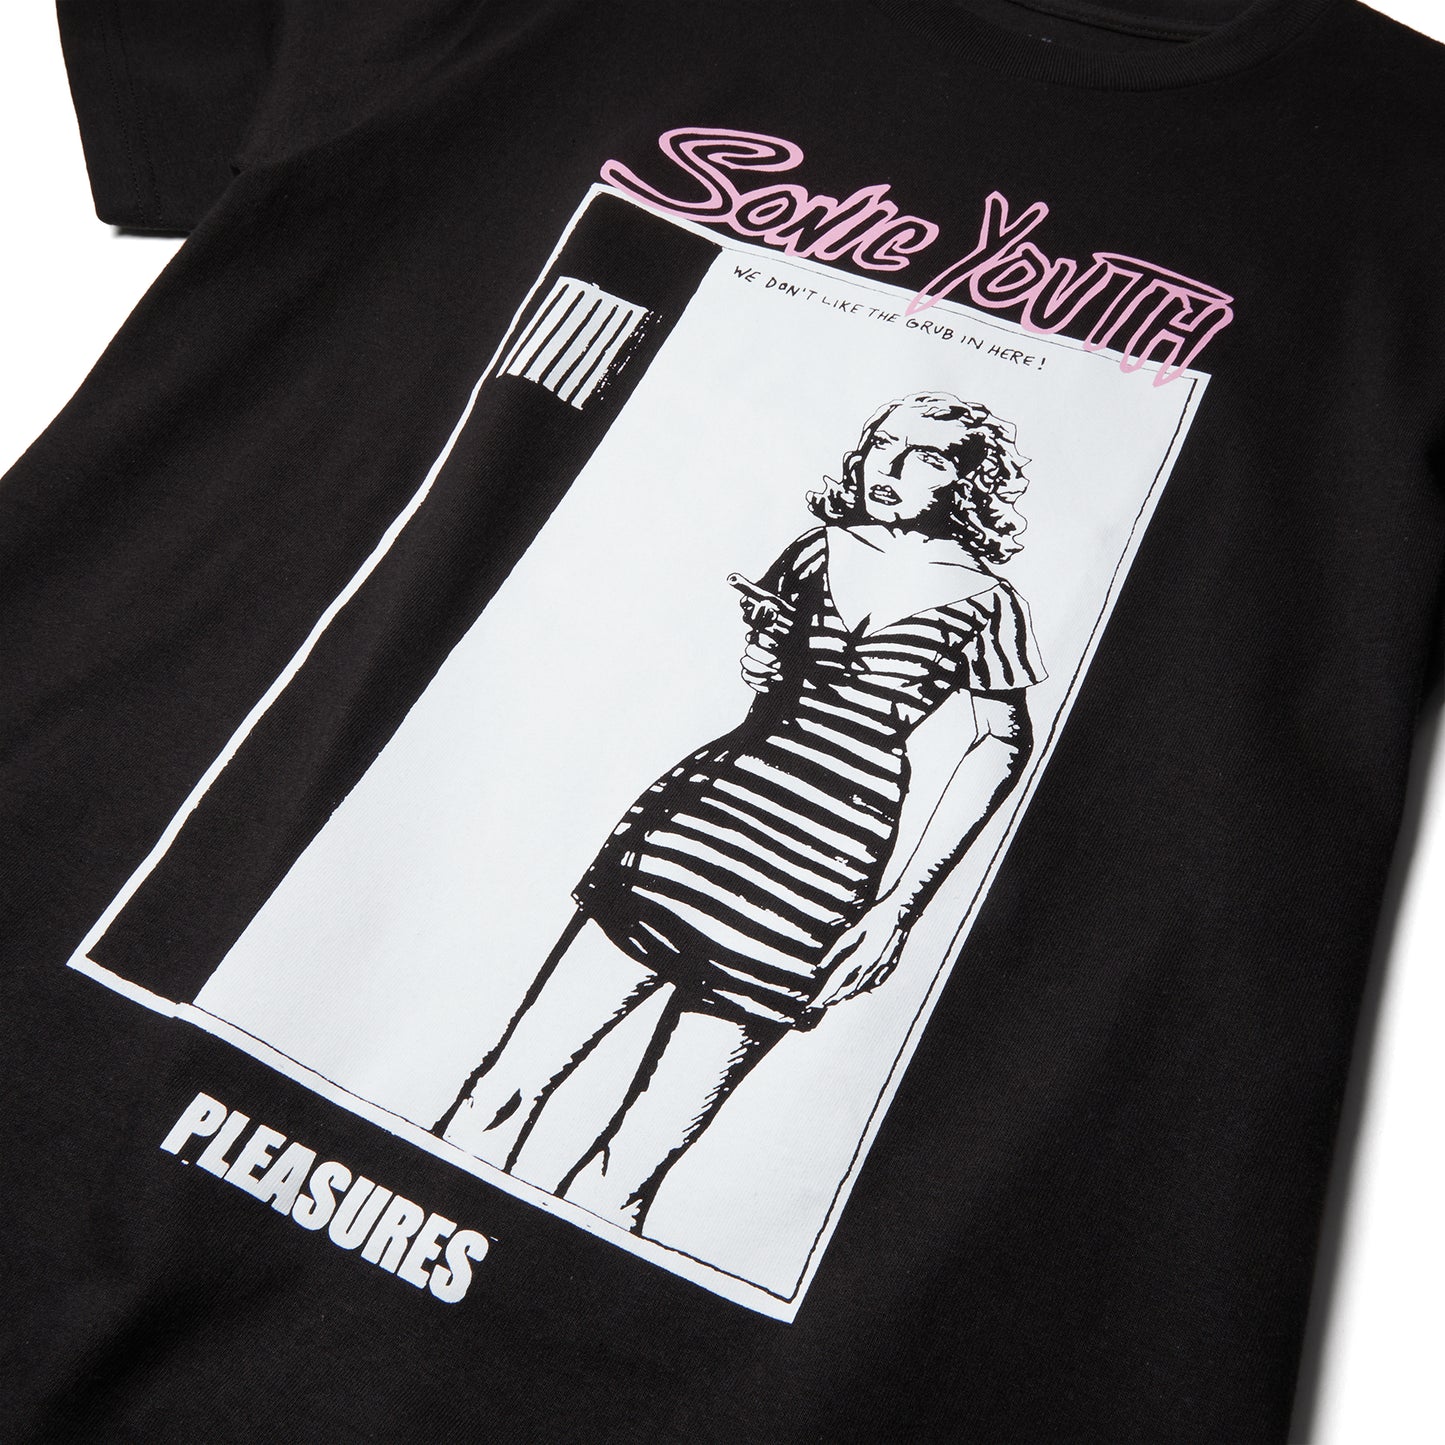 Pleasures Grub T-Shirt (Black)